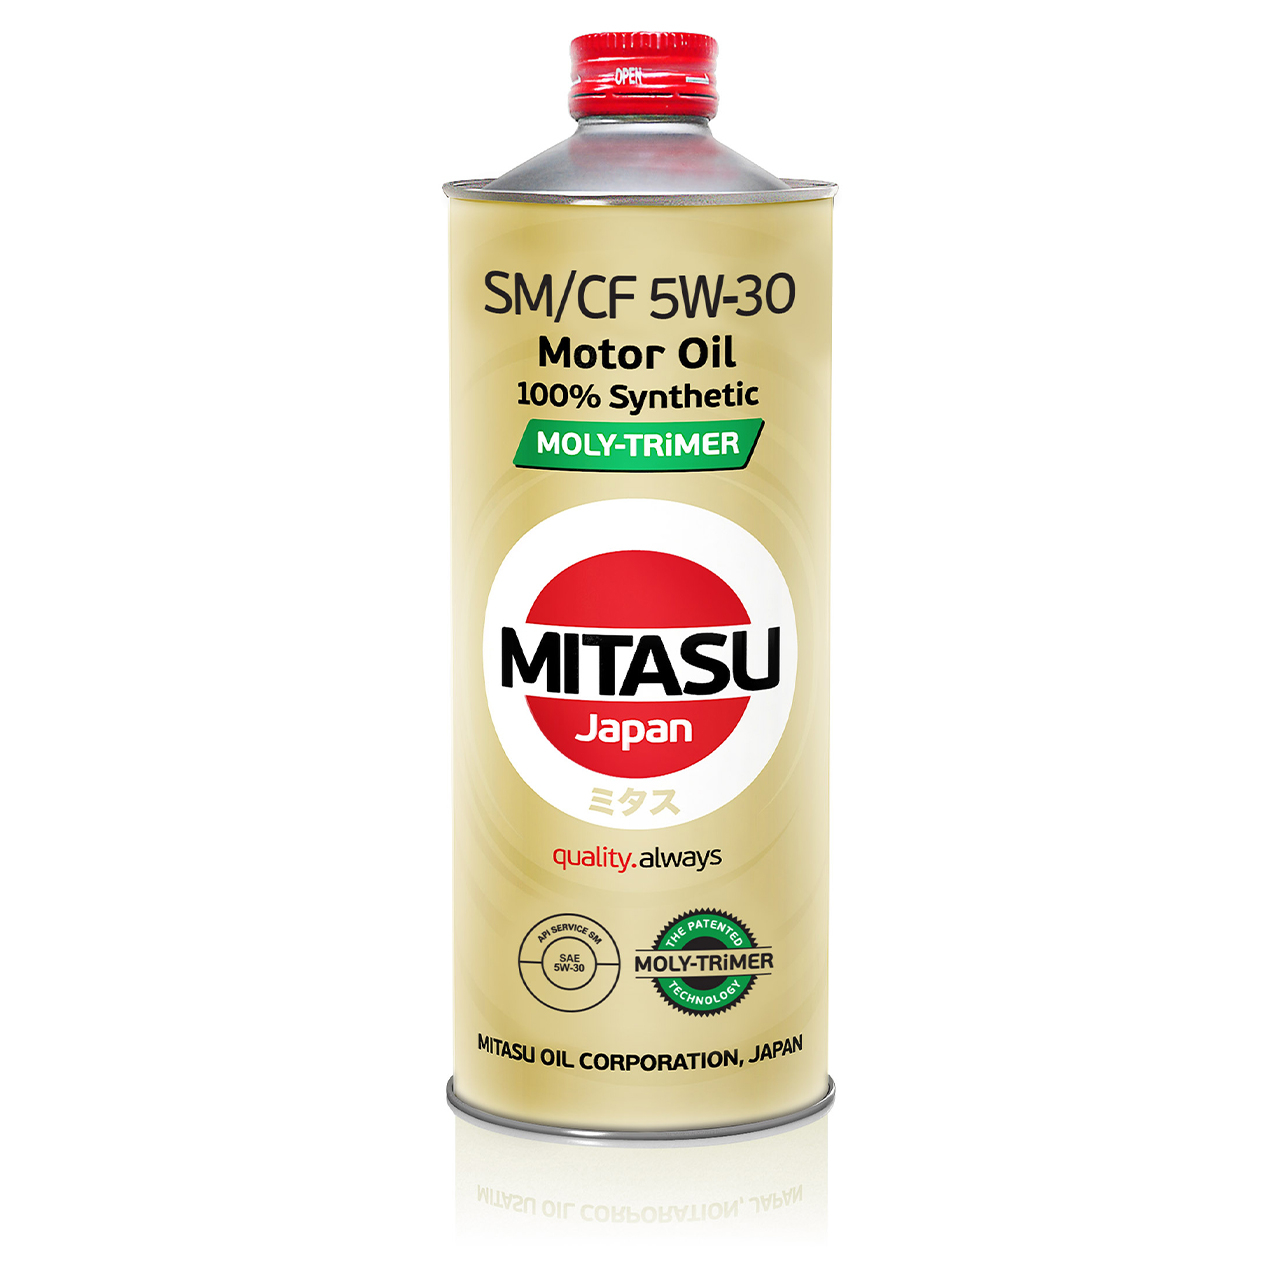 Купить запчасть MITASU - MJM111 Масло моторное MITASU SM M-T 5w30 1л синтетическое для бензиновых двигателей MJM11 (1/20) Япония